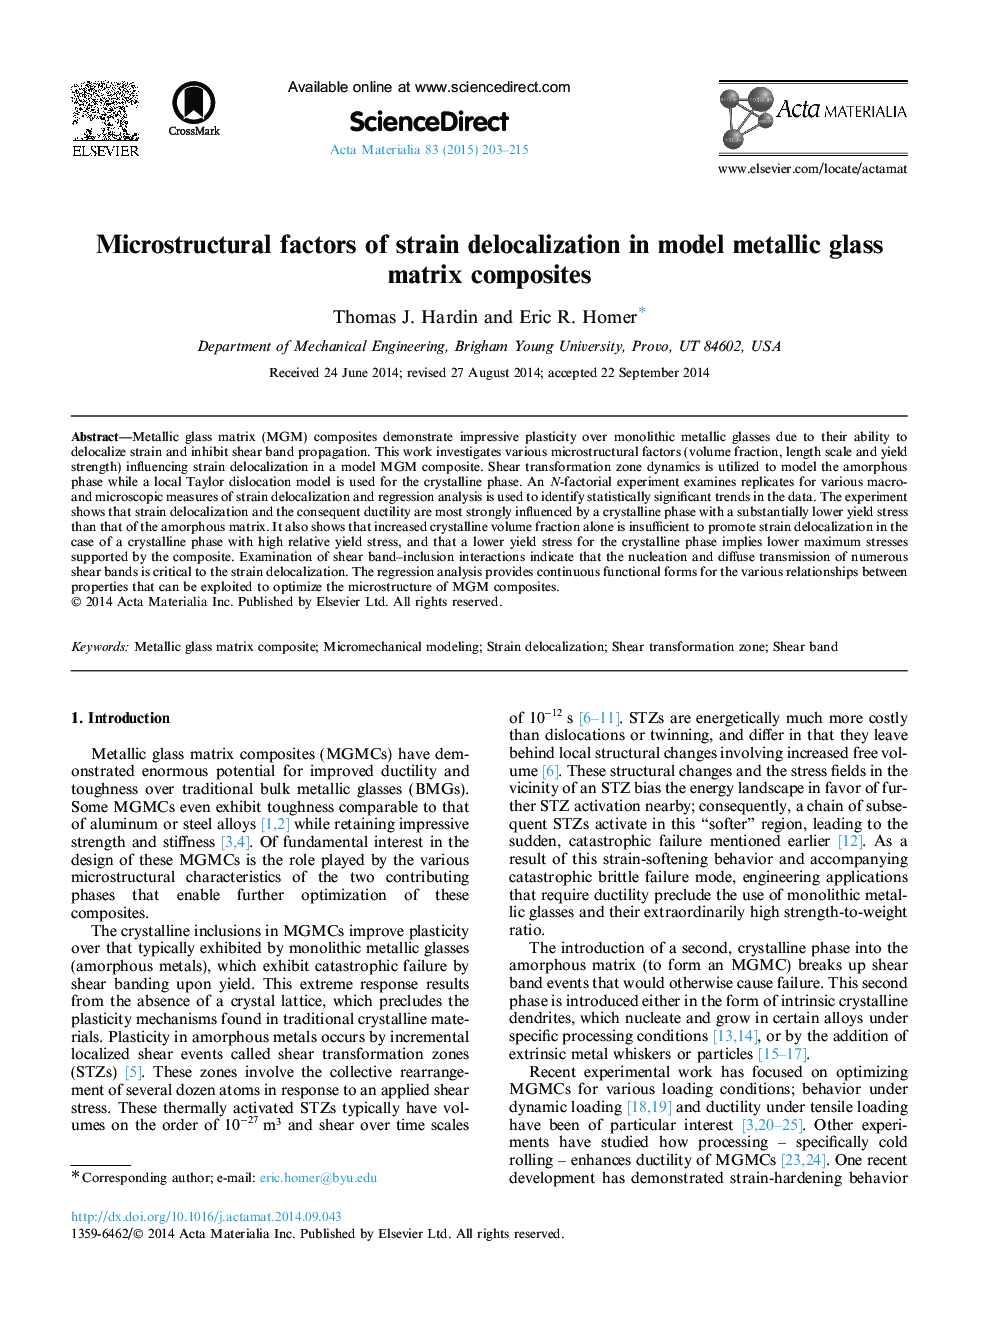 Microstructural factors of strain delocalization in model metallic glass matrix composites